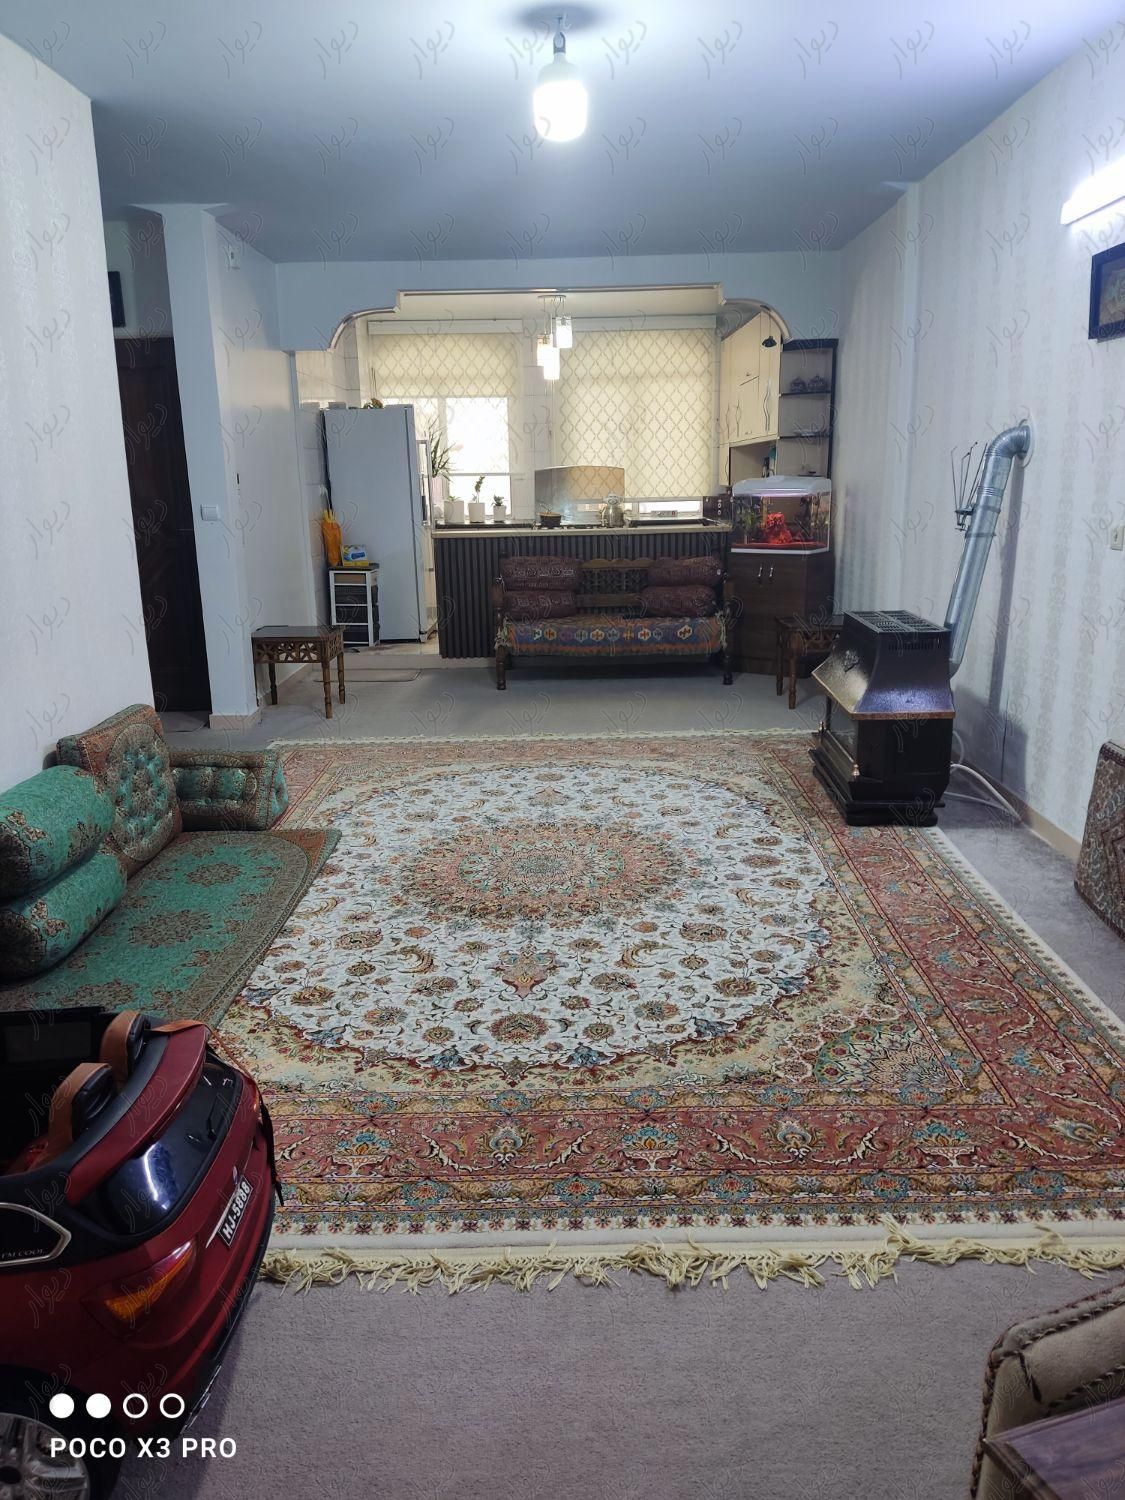 آپارتمان ۷۰ متری دو خوابه (خوش نقشه و شیک)|فروش آپارتمان|تهران, تاکسیرانی|دیوار